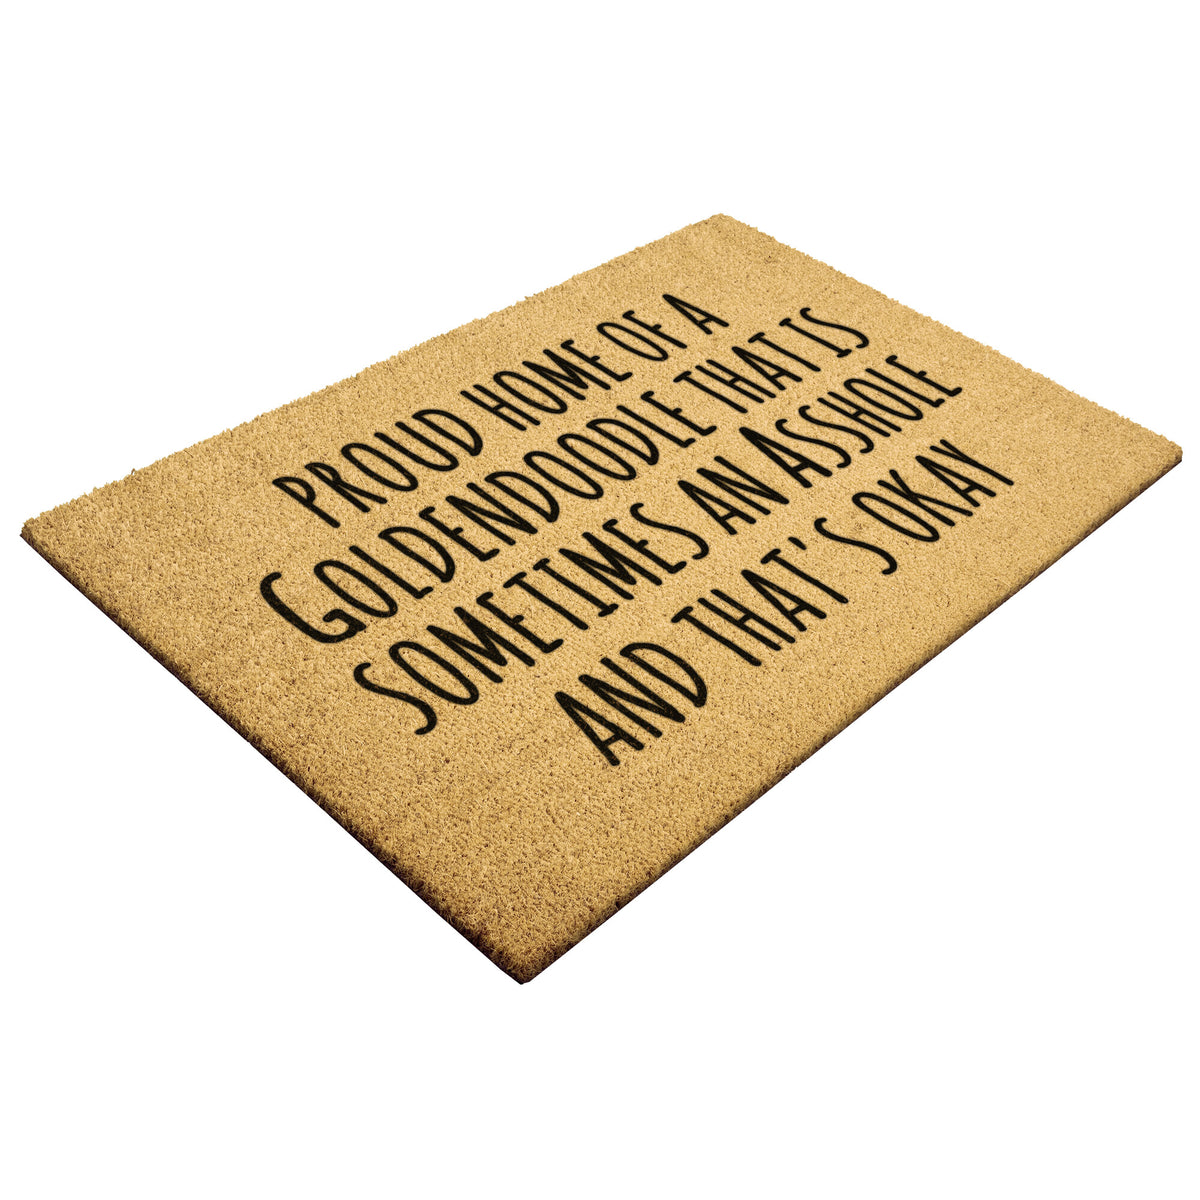 Proud Home Goldendoodle Doormat